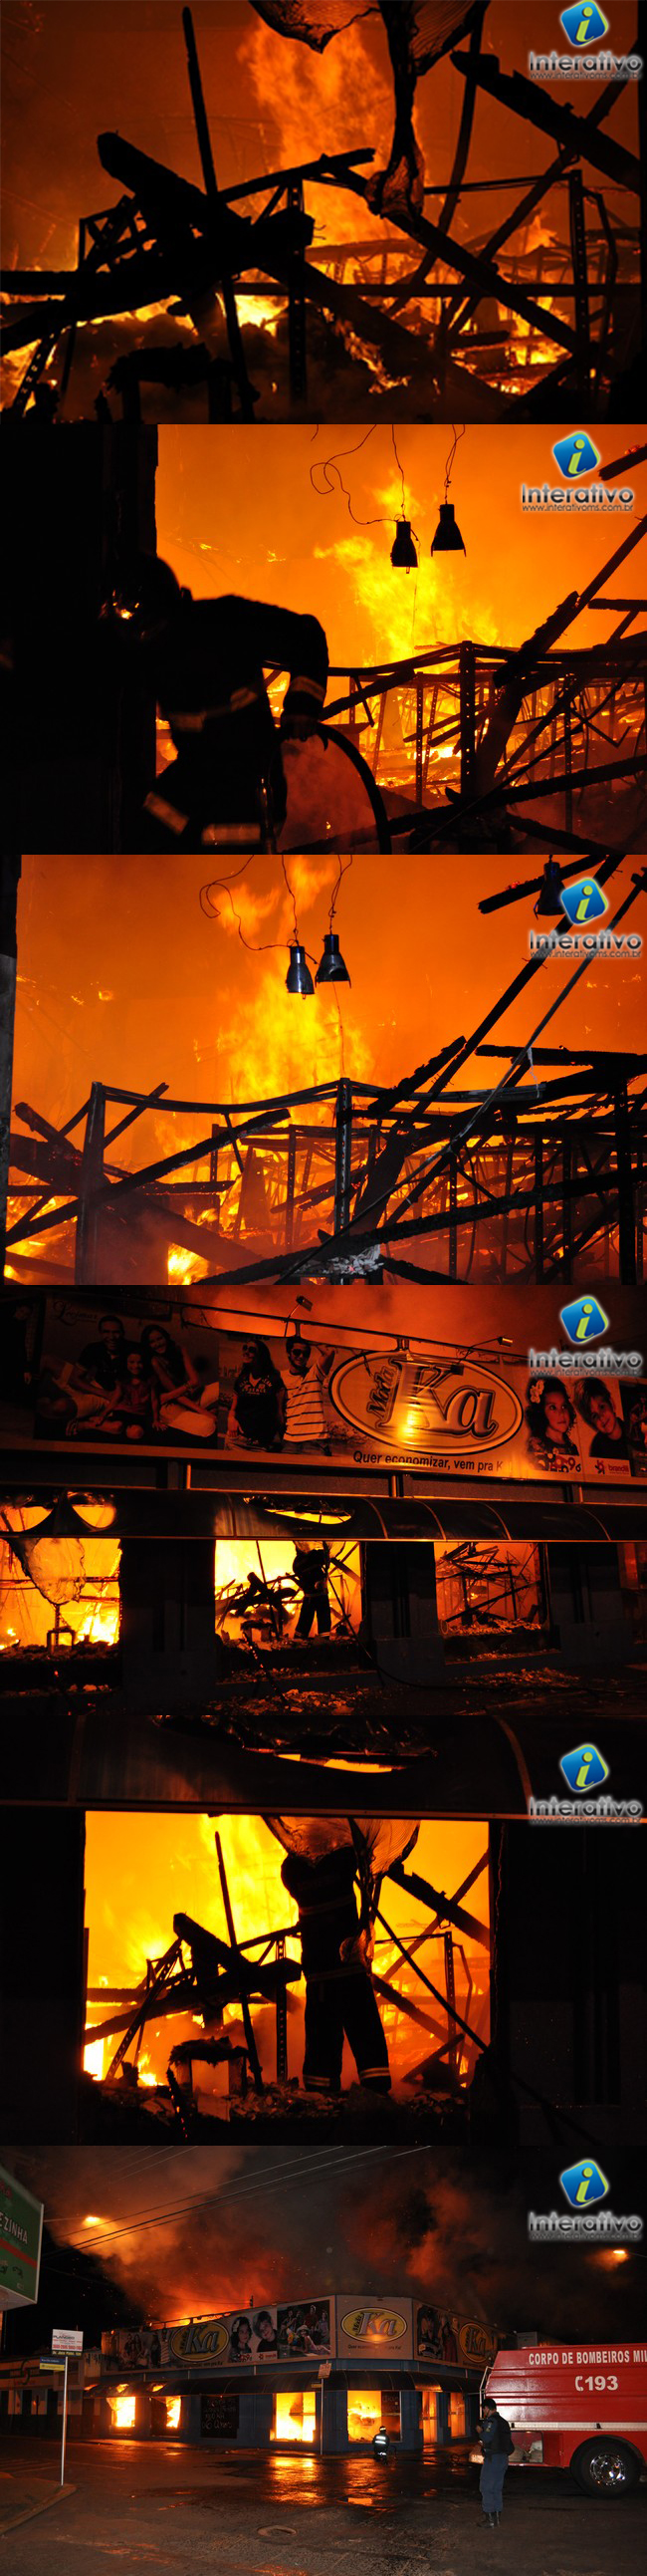 Foto do momento em que os bombeiros tentavam debelar o fogo na loja em Paranaibainterativoms